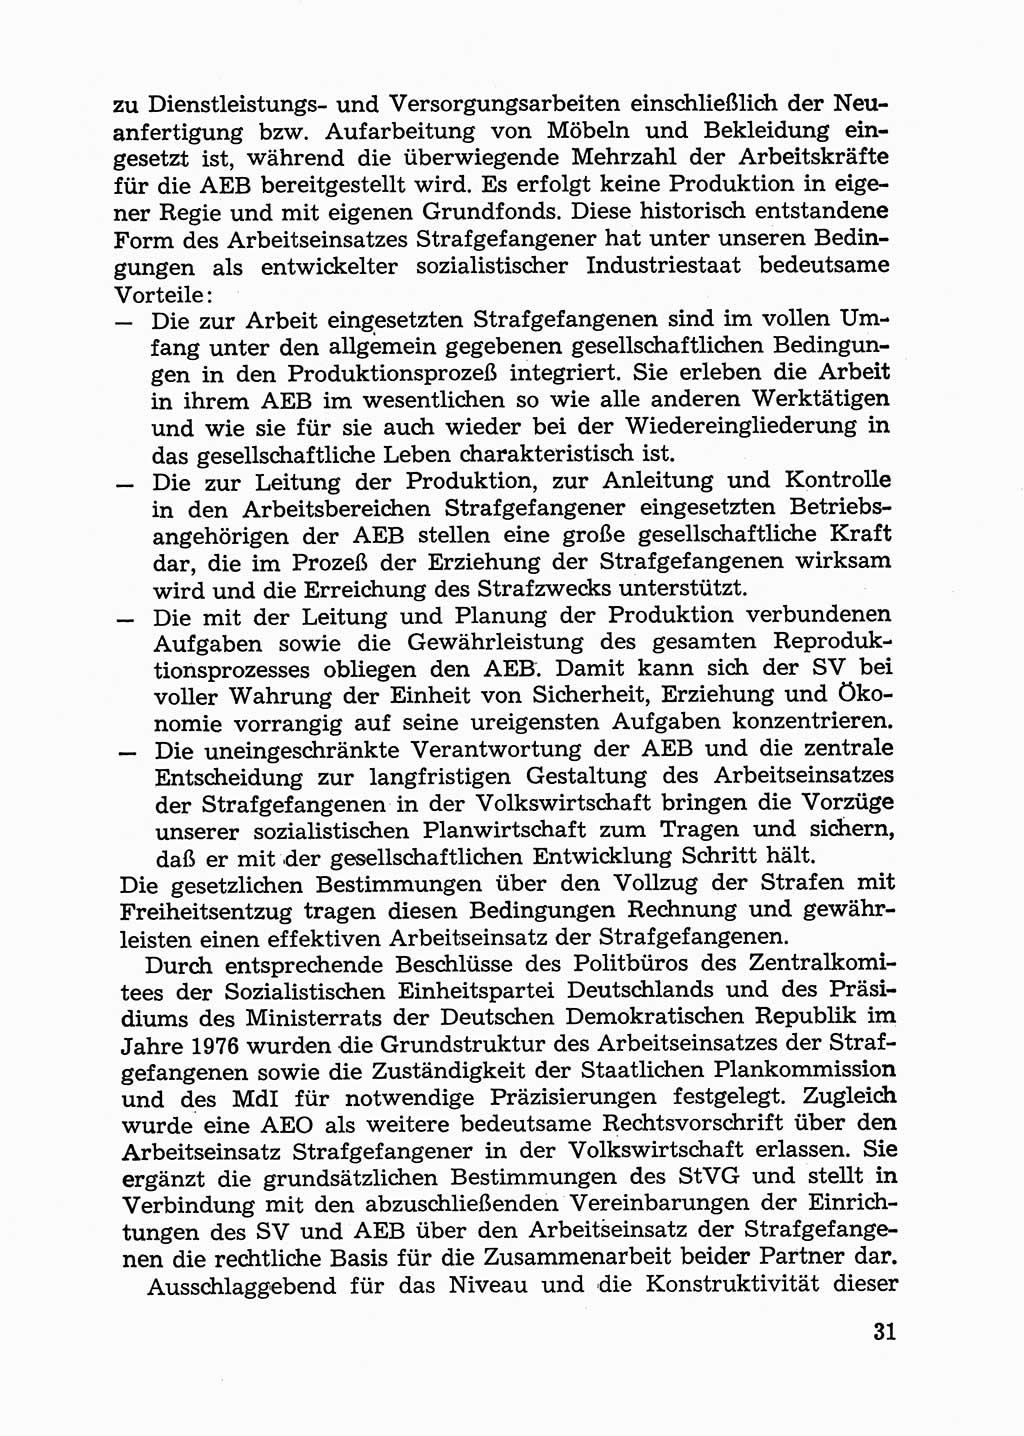 Handbuch für Betriebsangehörige, Abteilung Strafvollzug (SV) [Ministerium des Innern (MdI) Deutsche Demokratische Republik (DDR)] 1981, Seite 31 (Hb. BA Abt. SV MdI DDR 1981, S. 31)